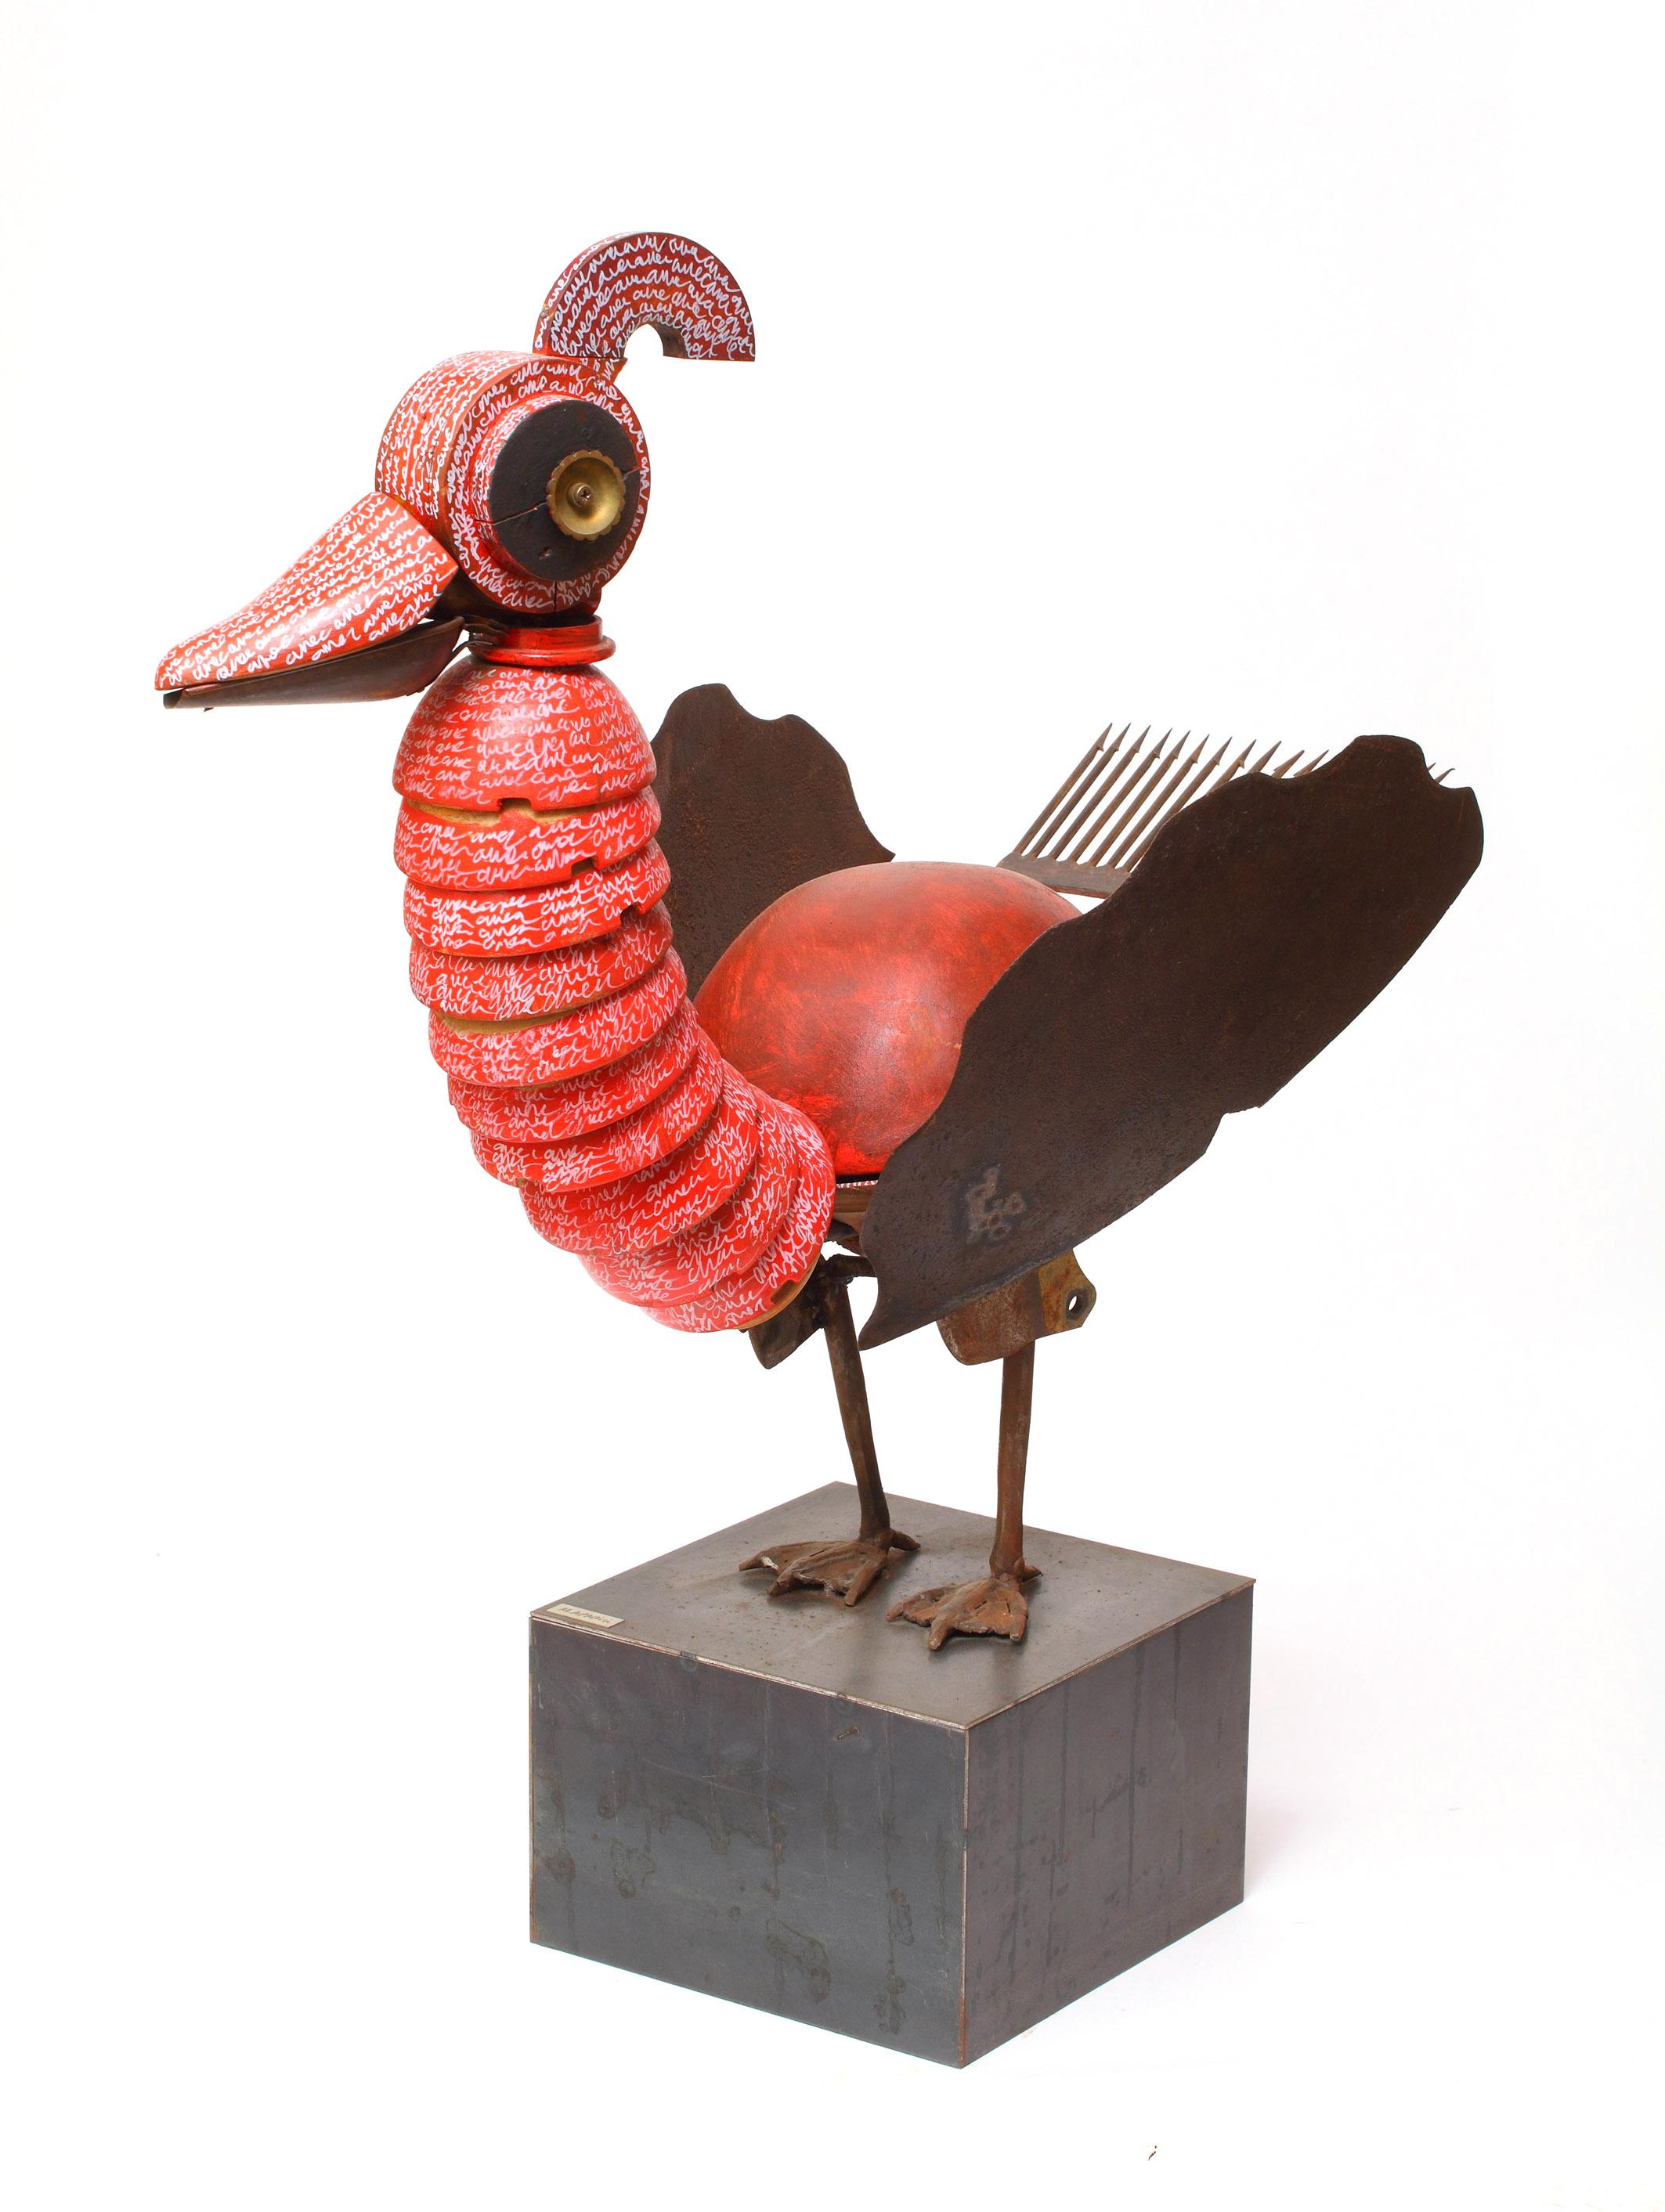 Miquel Aparici Figurative Sculpture – Zeitgenössische Skulptur des 21. Jahrhunderts, figurative, recycelte Objekte, Pjaro Chino